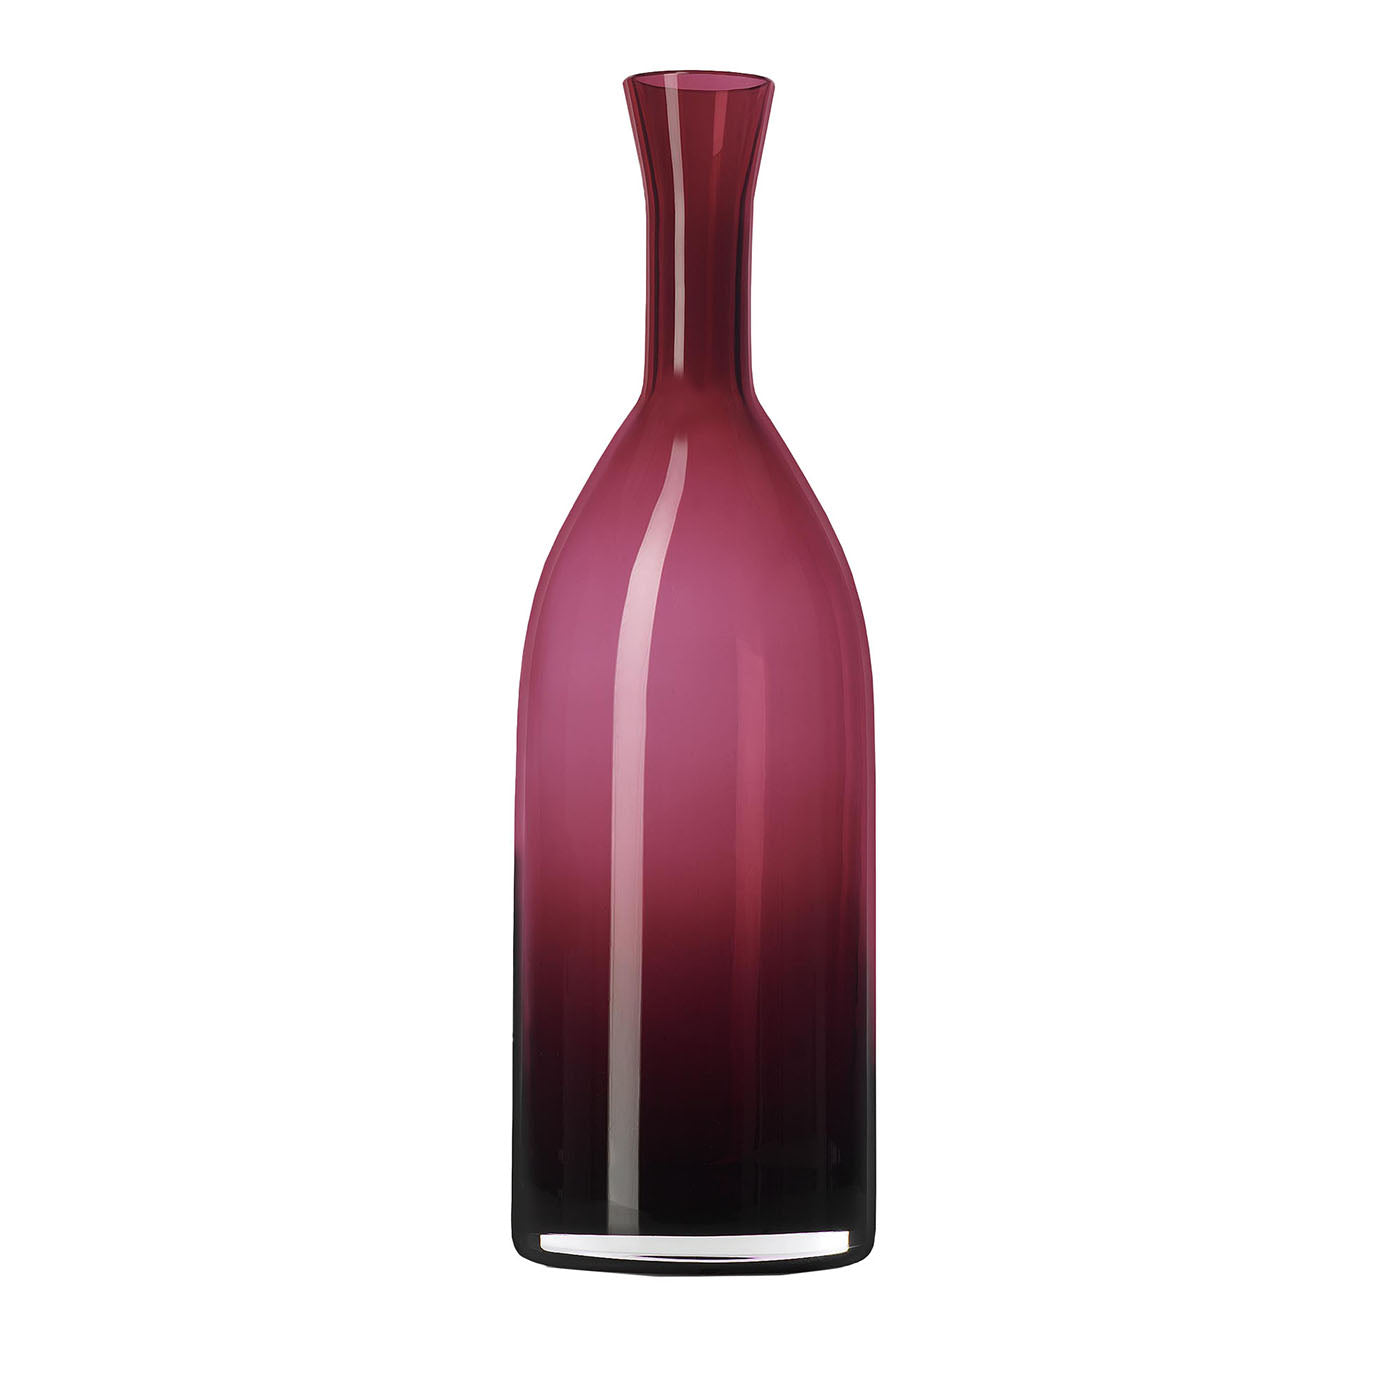 Morandi N.11 Bottiglia decorativa rosso rubino - Vista principale